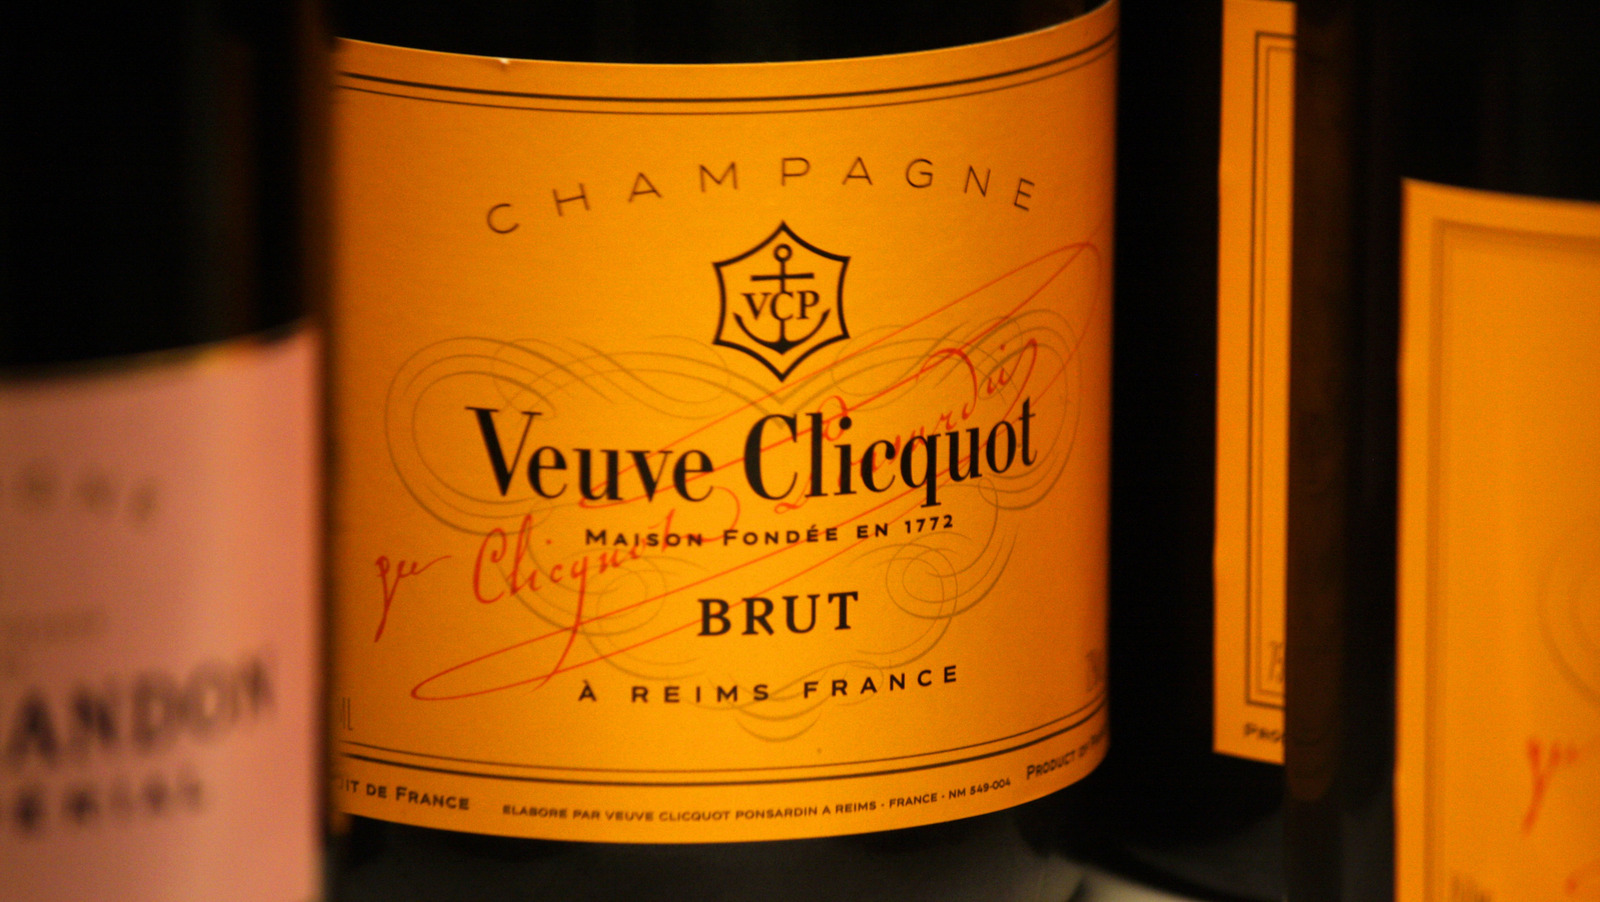 Veuve Clicquot Tour, Exclusive Veuve Clicquot